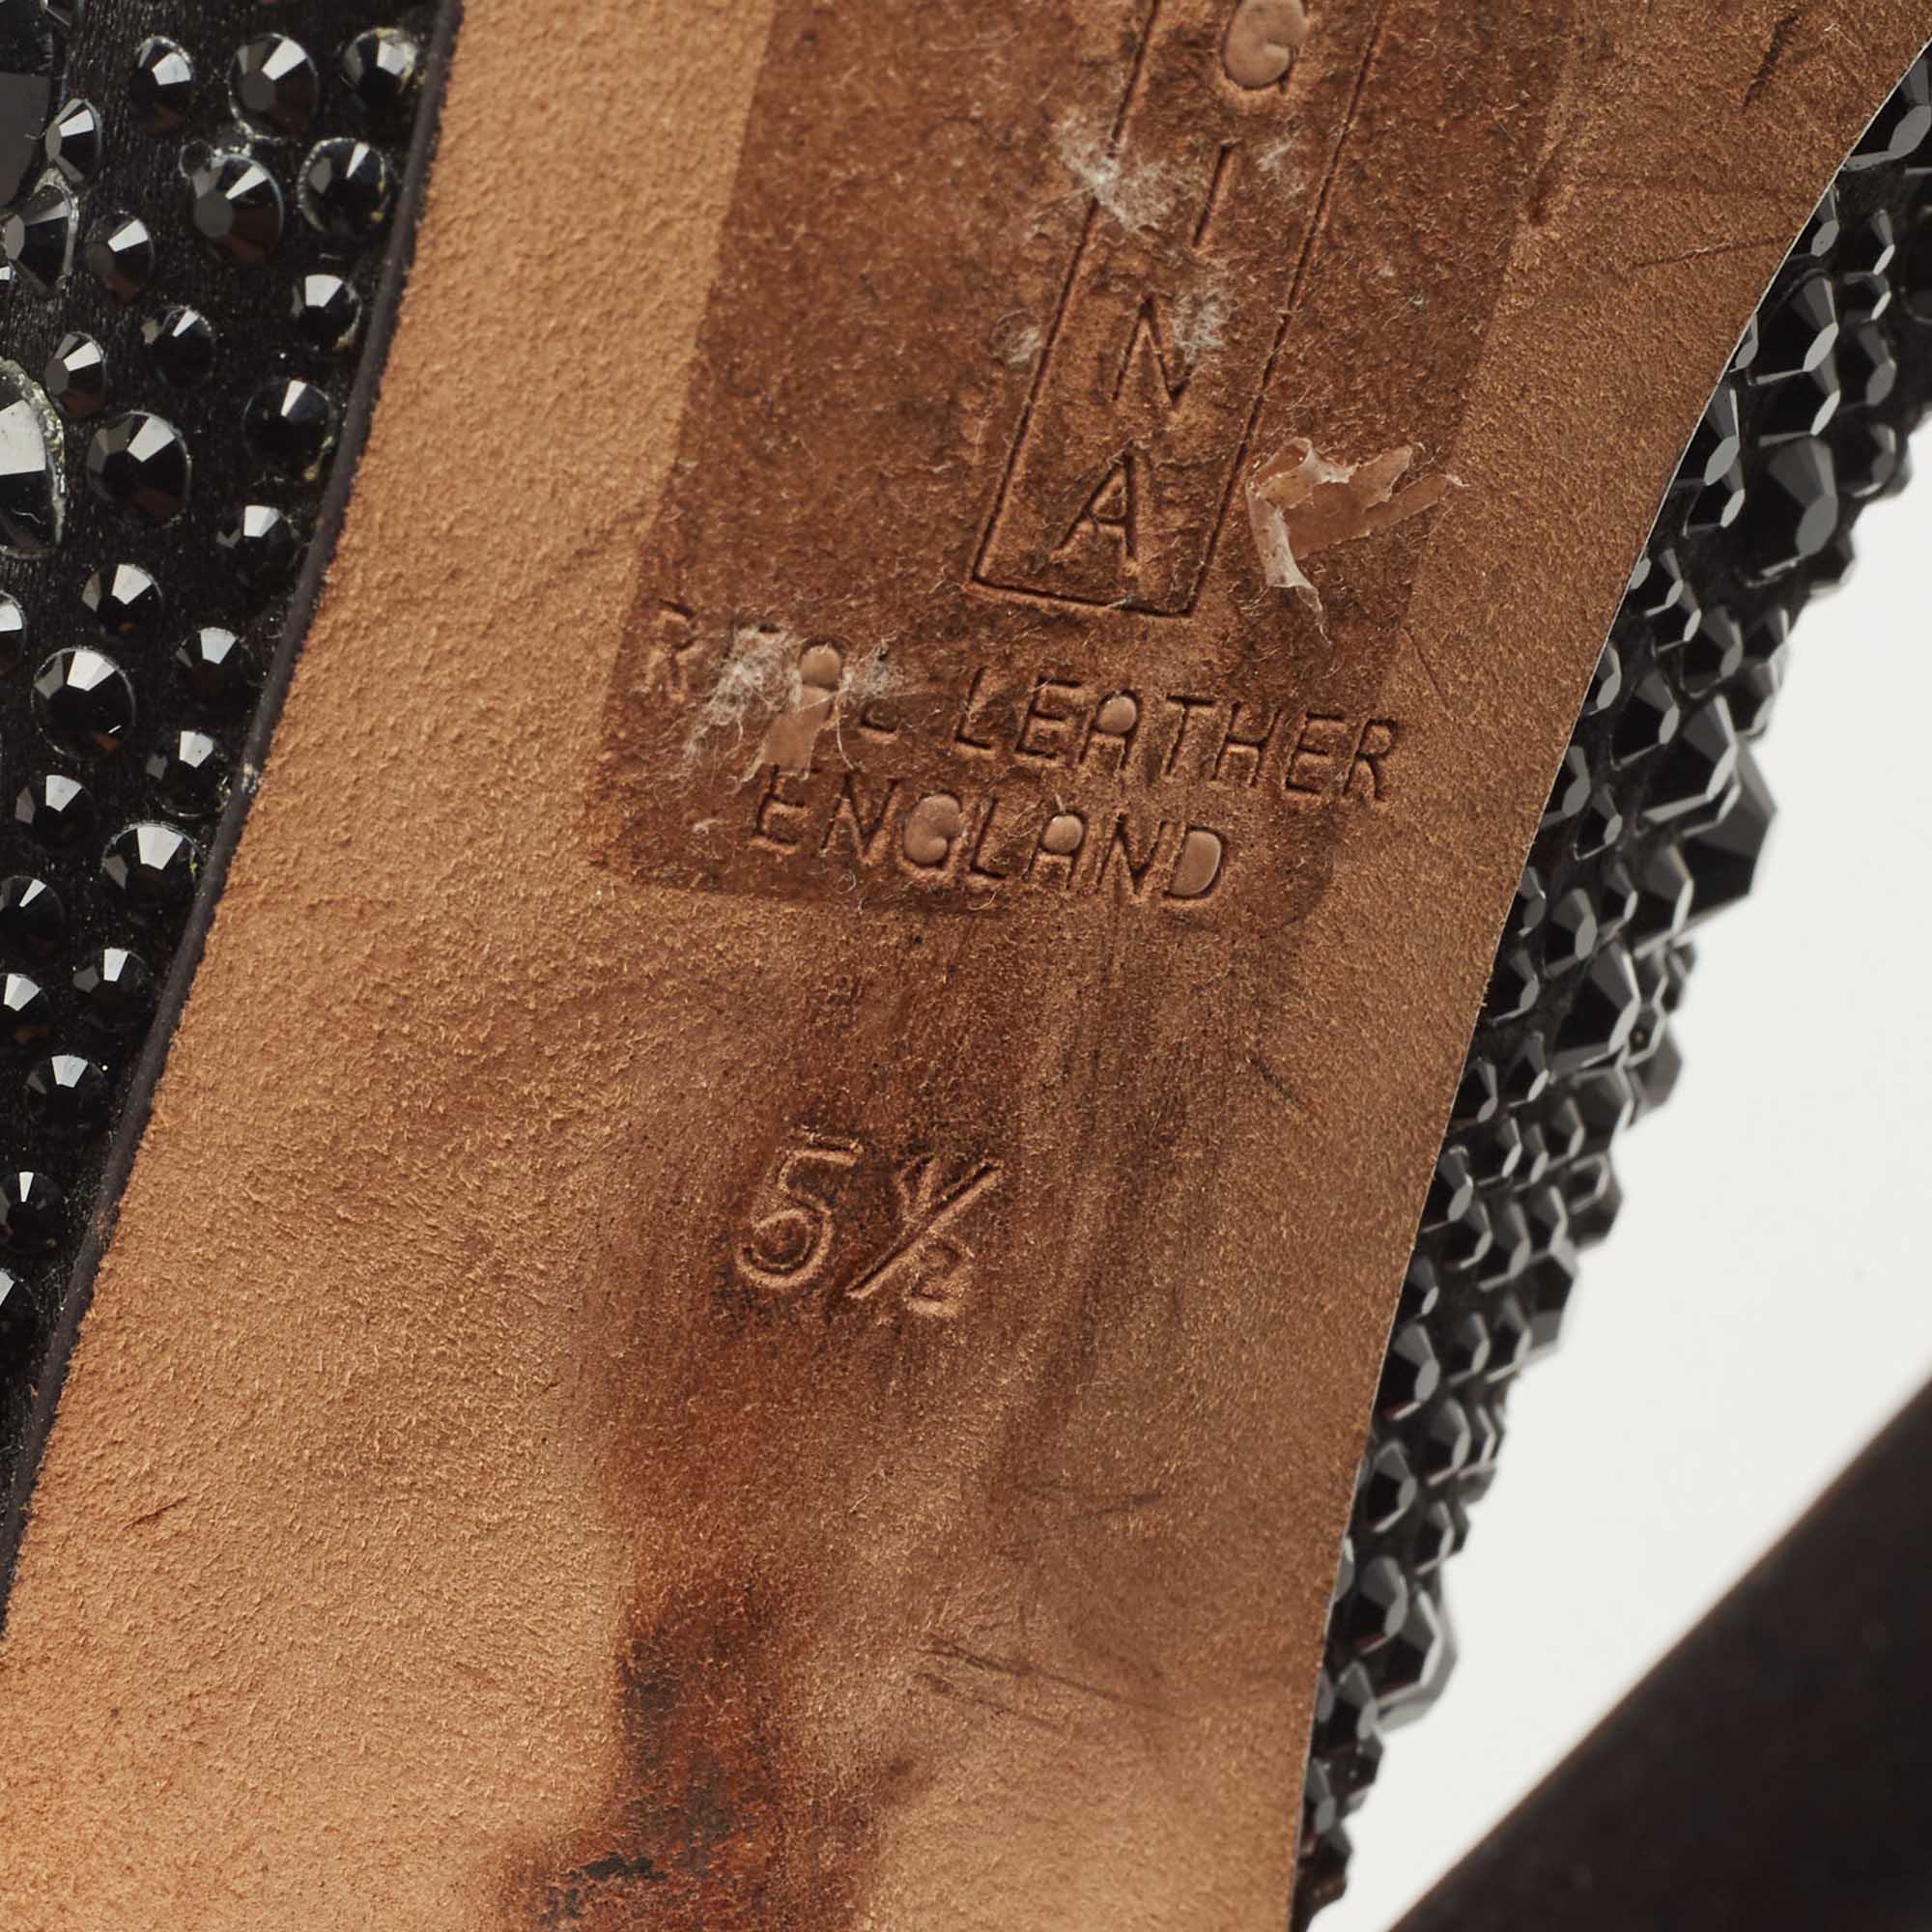 Gina Black Crystal Embellished Satin Slingback Sandals Size 38.5